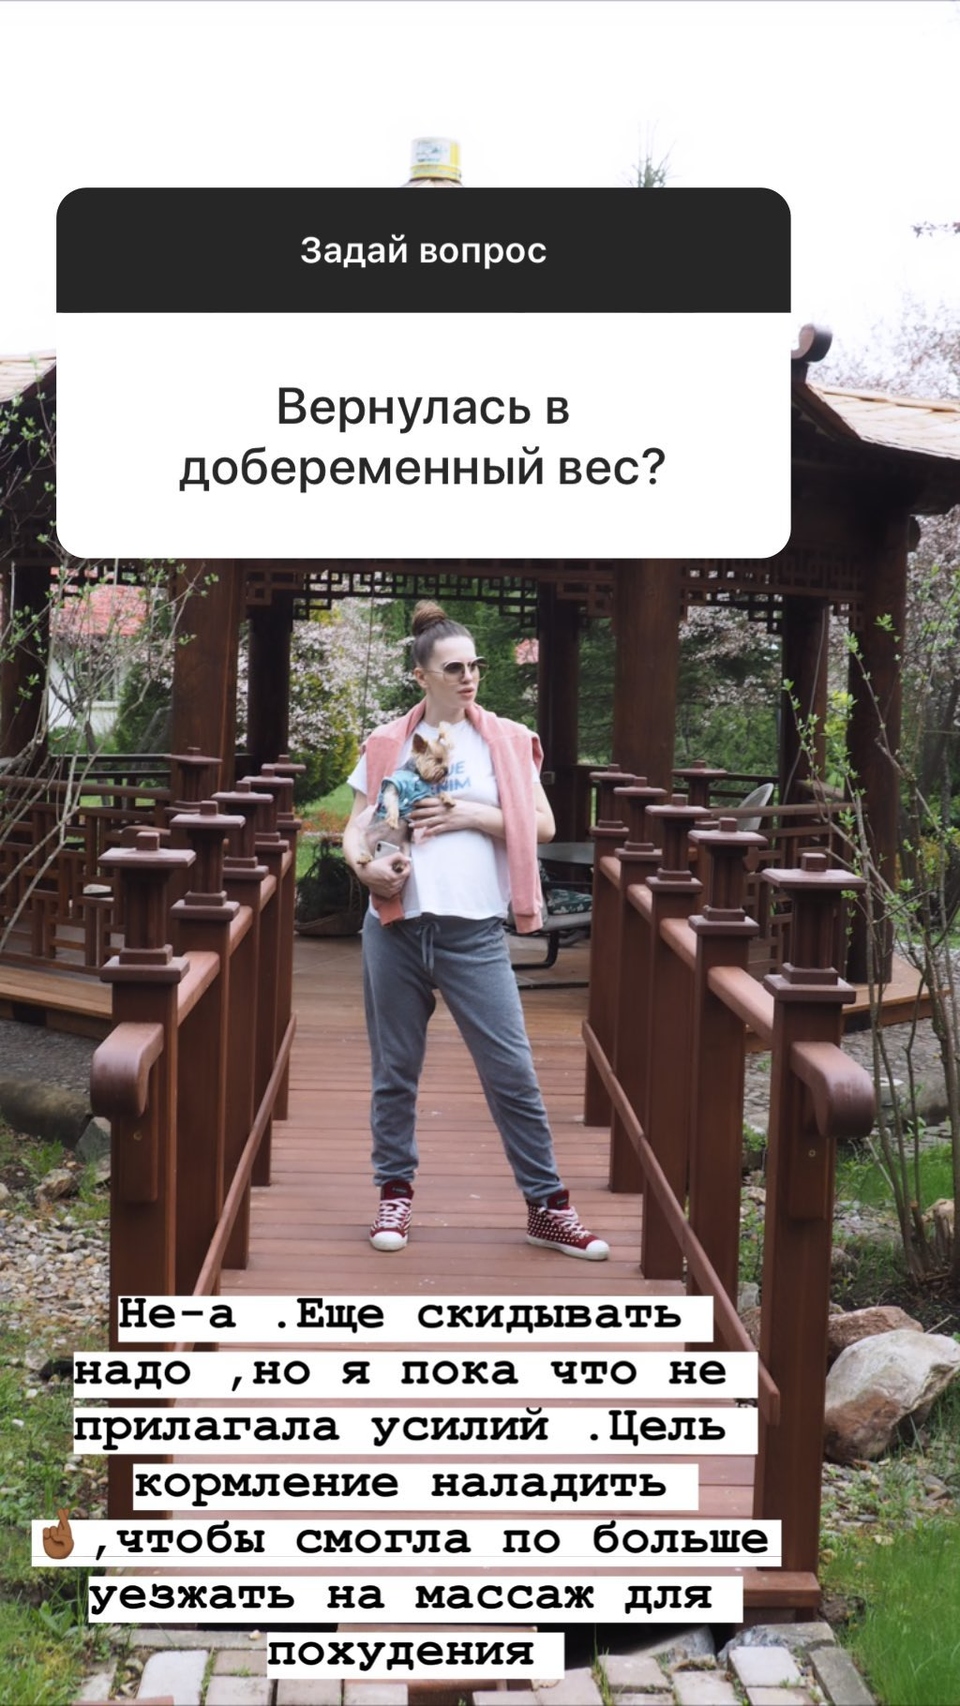 Артёмова хочет ходить на массаж для похудения&nbsp; ​Фото: «Инстаграм» 